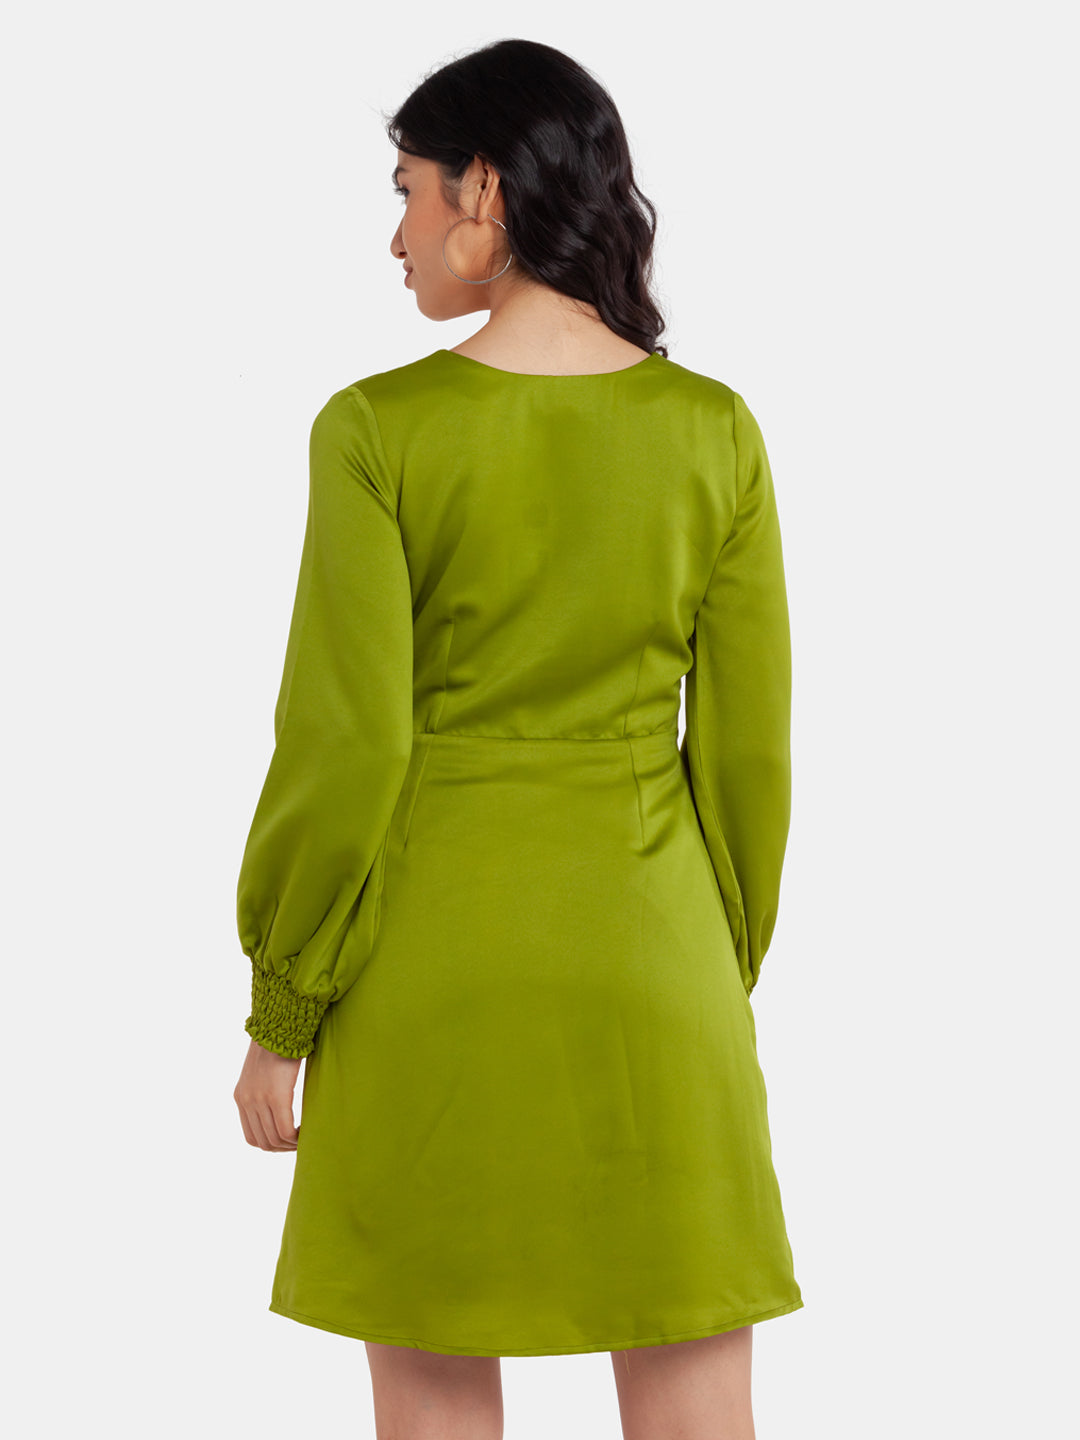 Green Solid Cutout Short Dress For Women